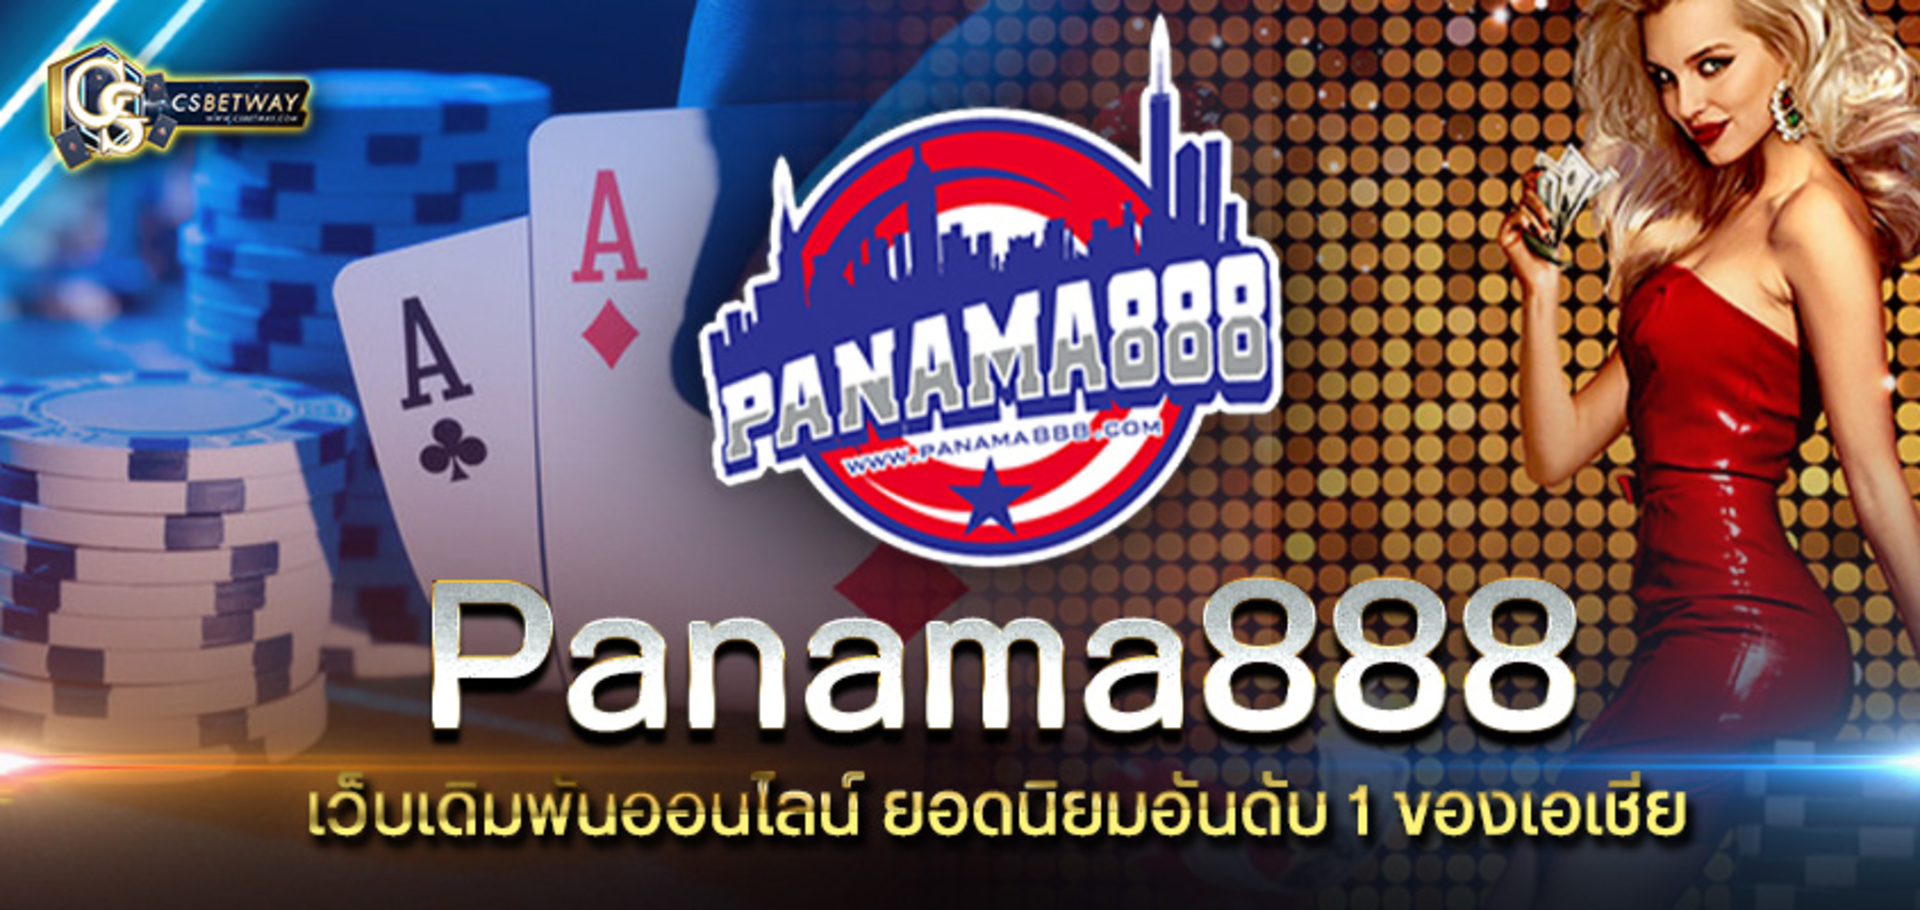 Panama888 เว็บเดิมพันออนไลน์ สล็อตออนไลน์ เกมยิงปลา เดิมพันกีฬา